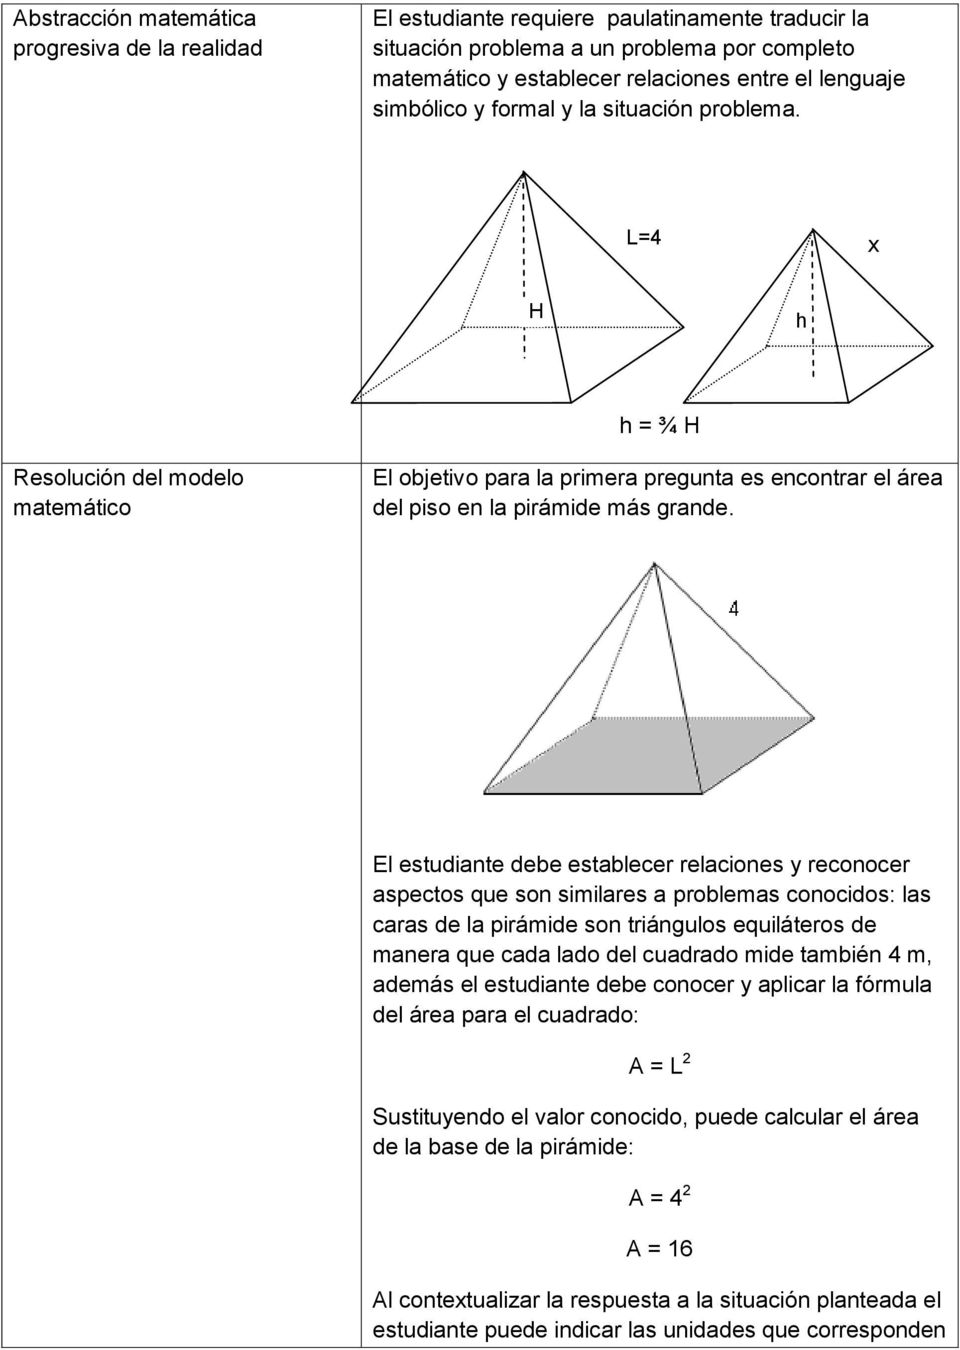 El estudiante debe establecer relaciones y reconocer aspectos que son similares a problemas conocidos: las caras de la pirámide son triángulos equiláteros de manera que cada lado del cuadrado mide